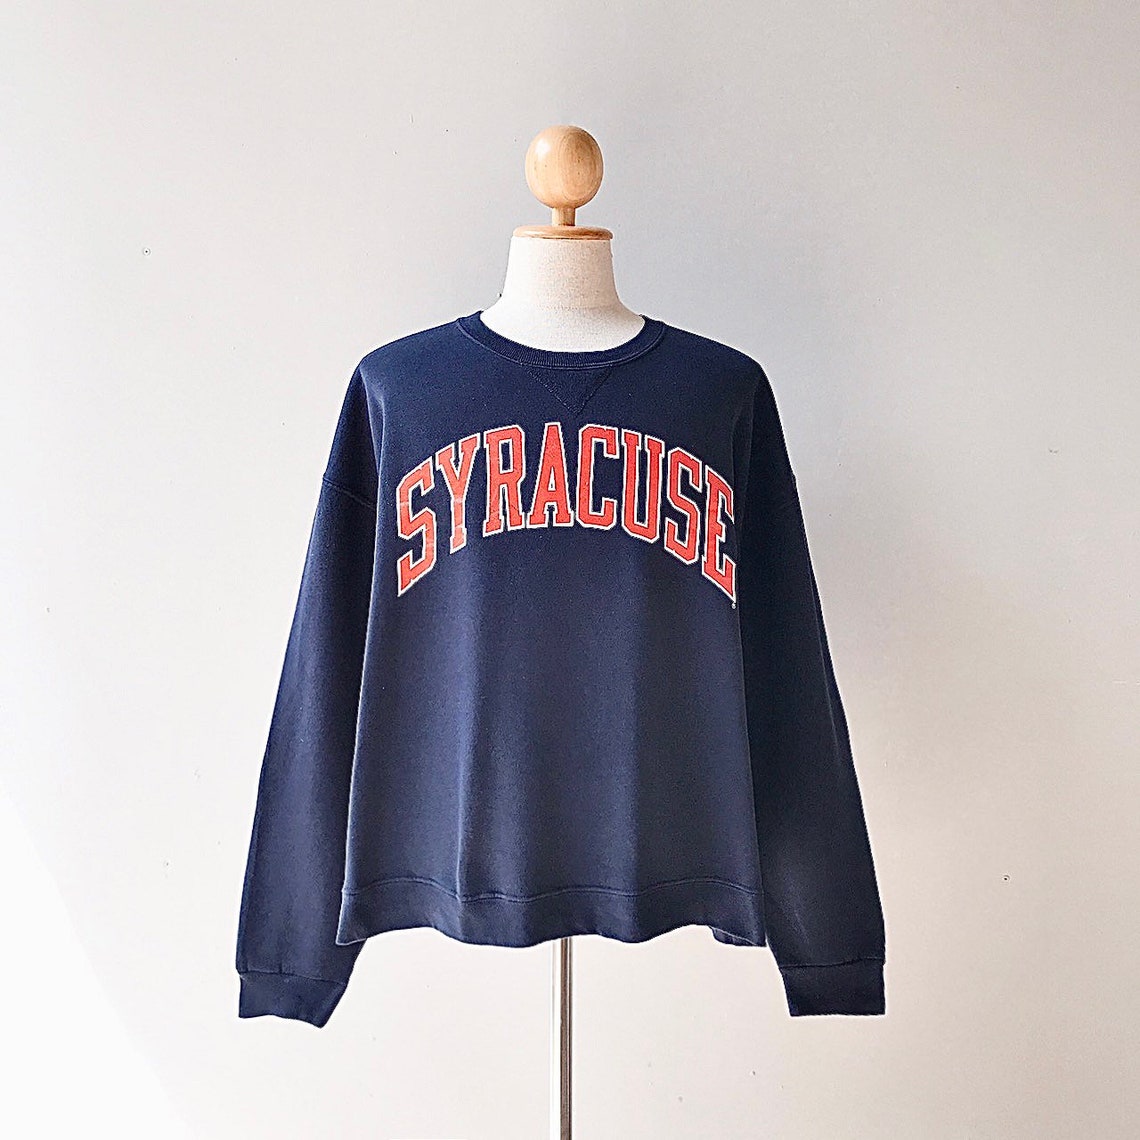 Vintage Syracuse University Sweatshirt size XL | Etsy